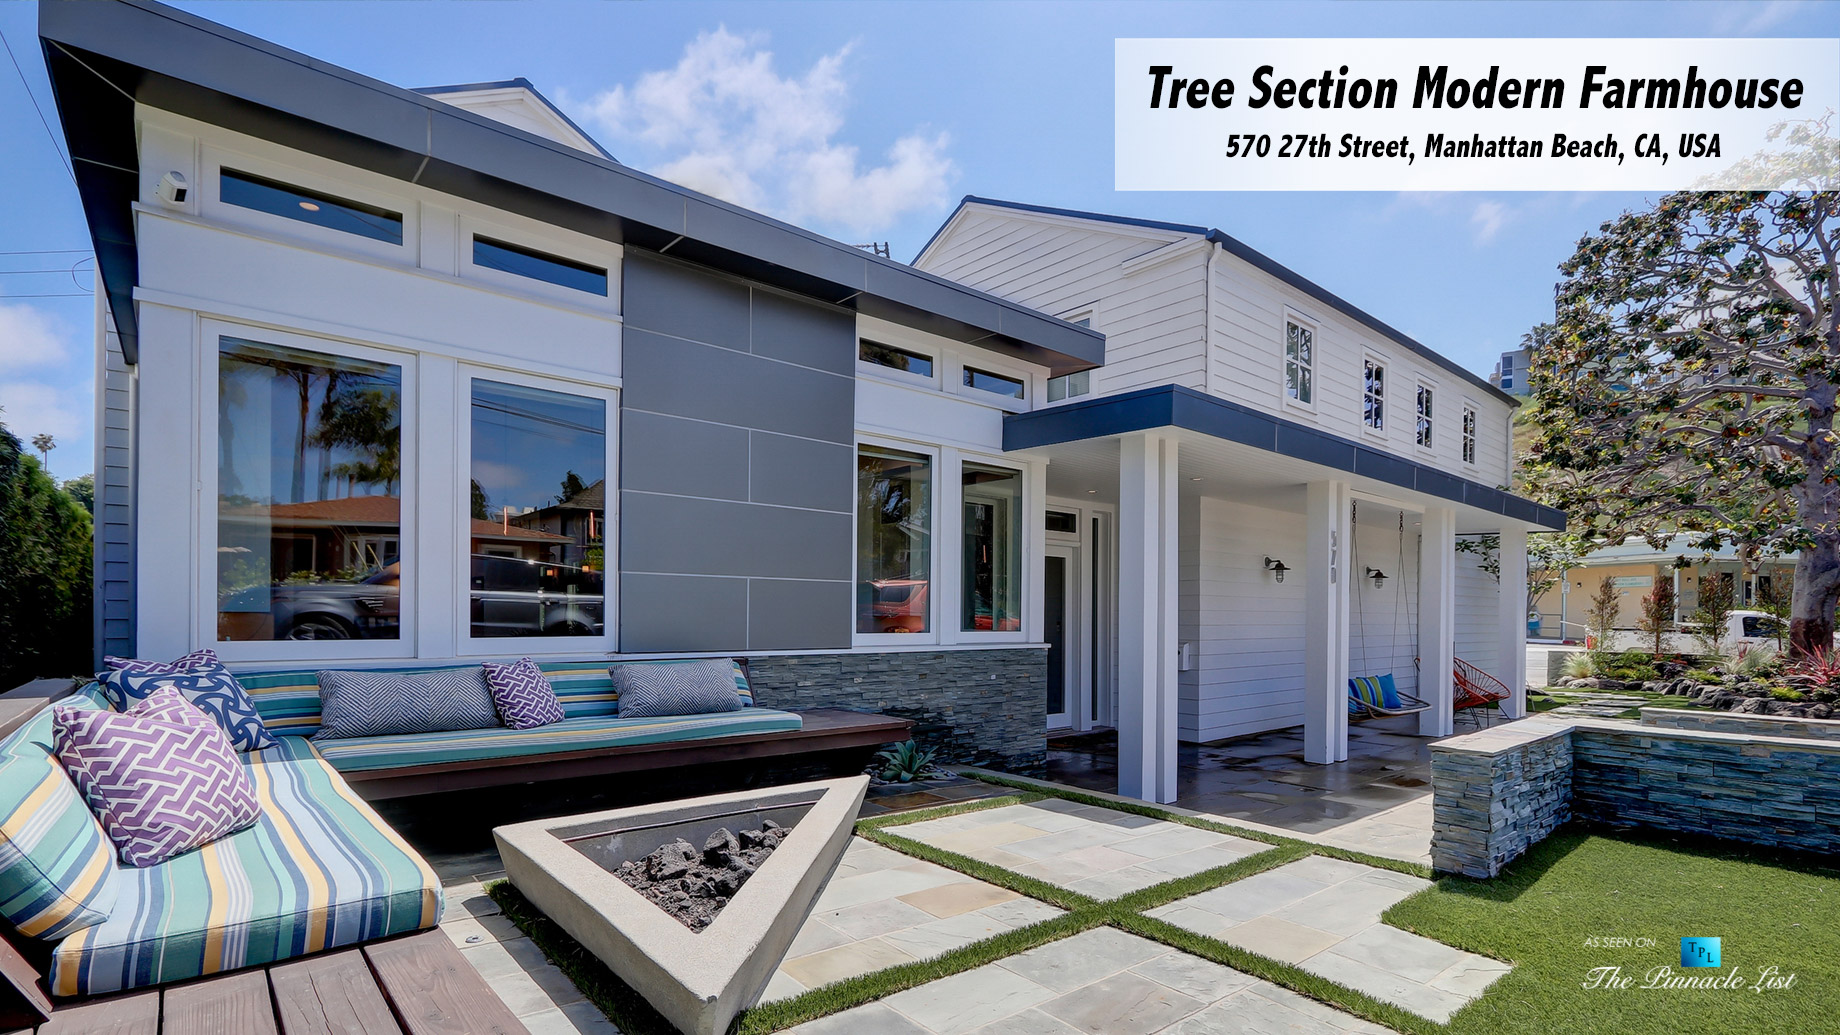 Tree Section Modern Farmhouse – 570 27th Street, Manhattan Beach, CA, USA